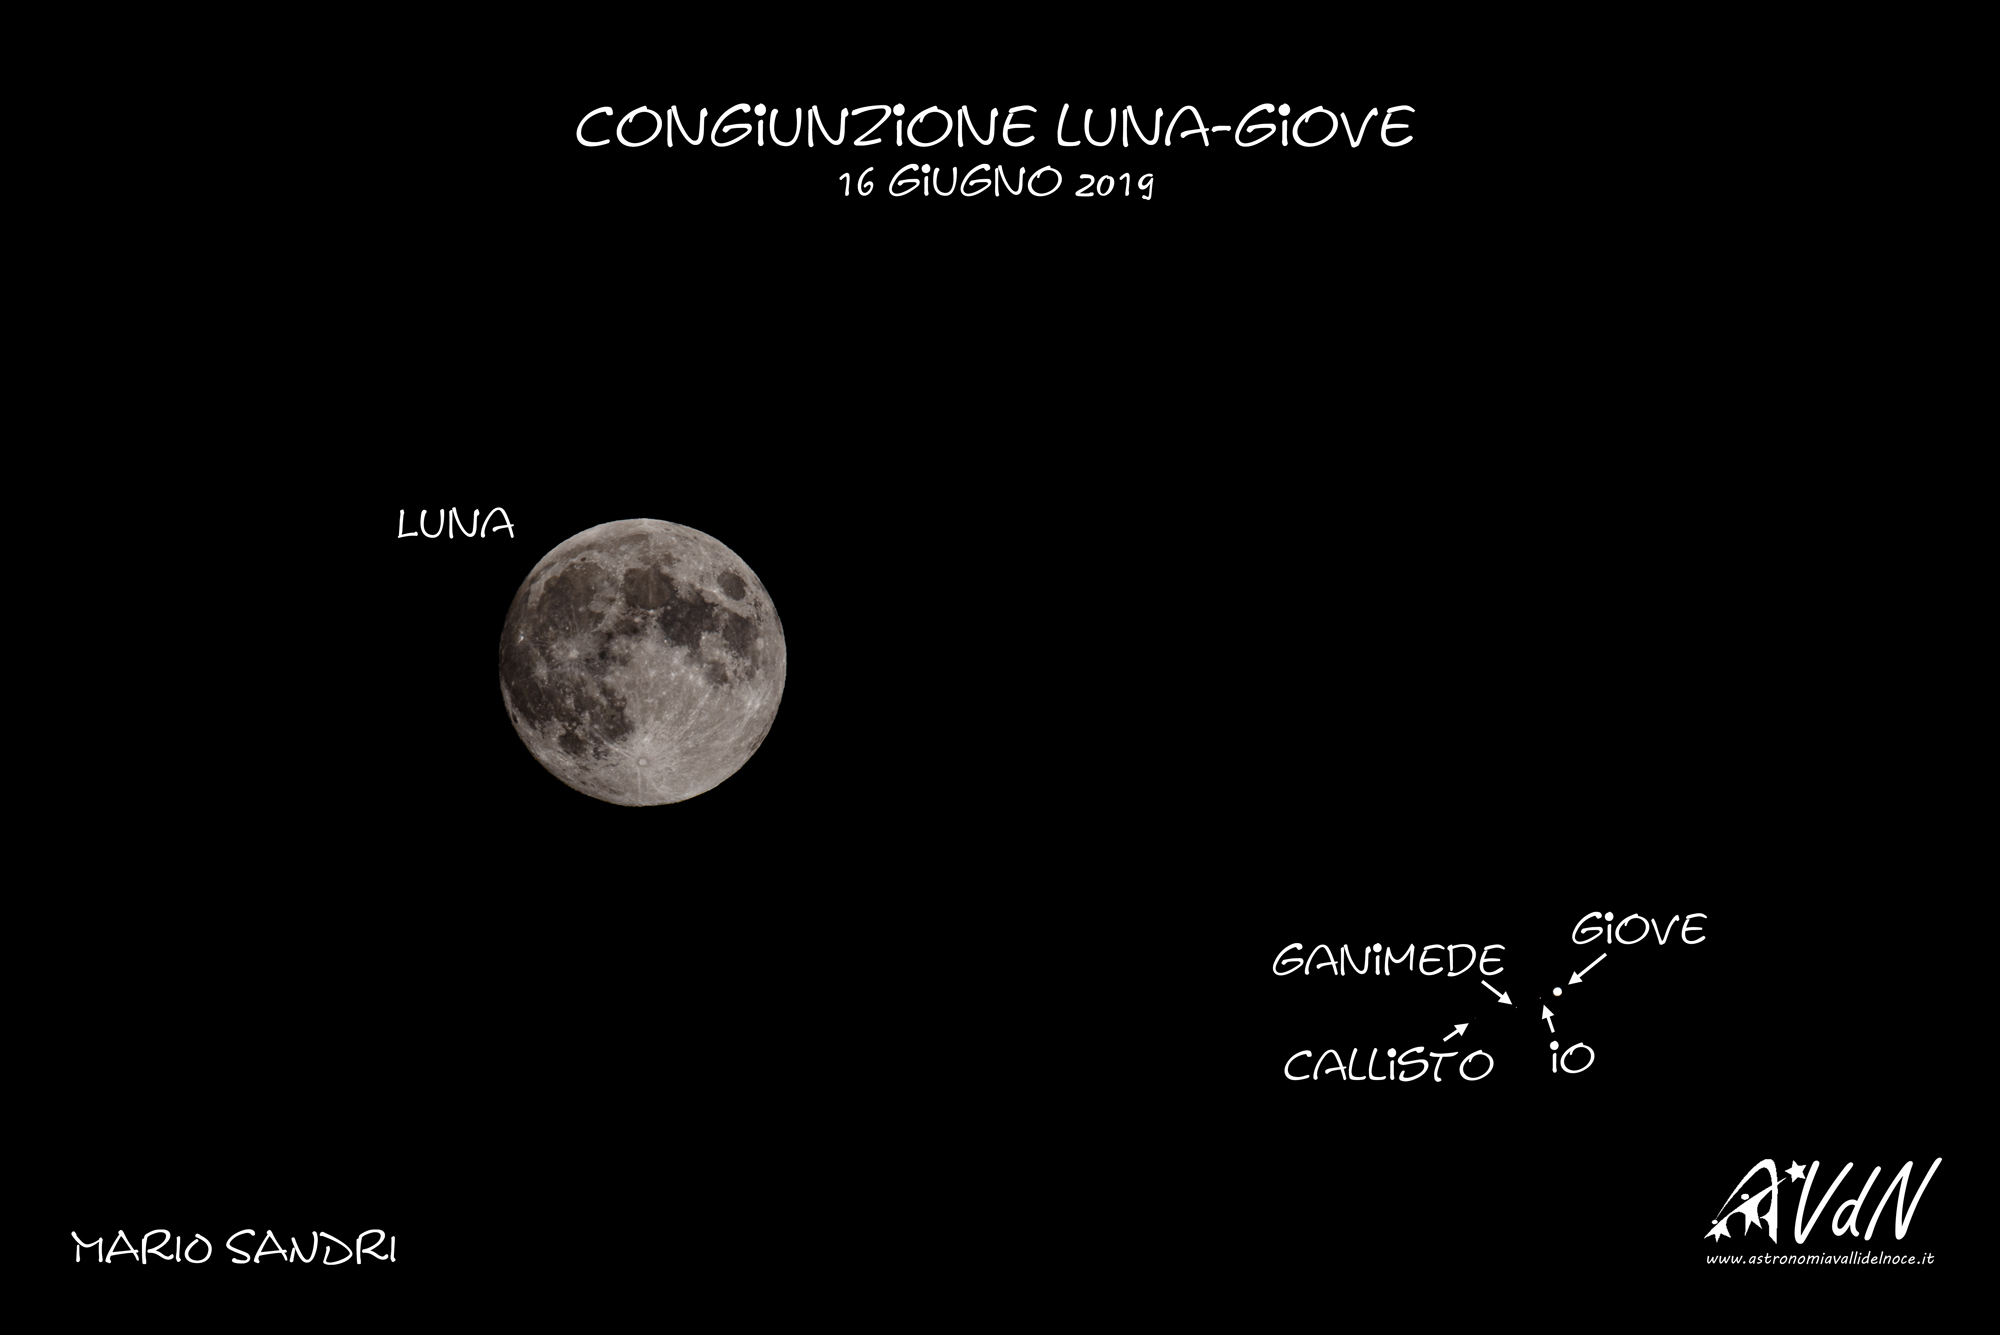 Congiunzione Luna-Giove